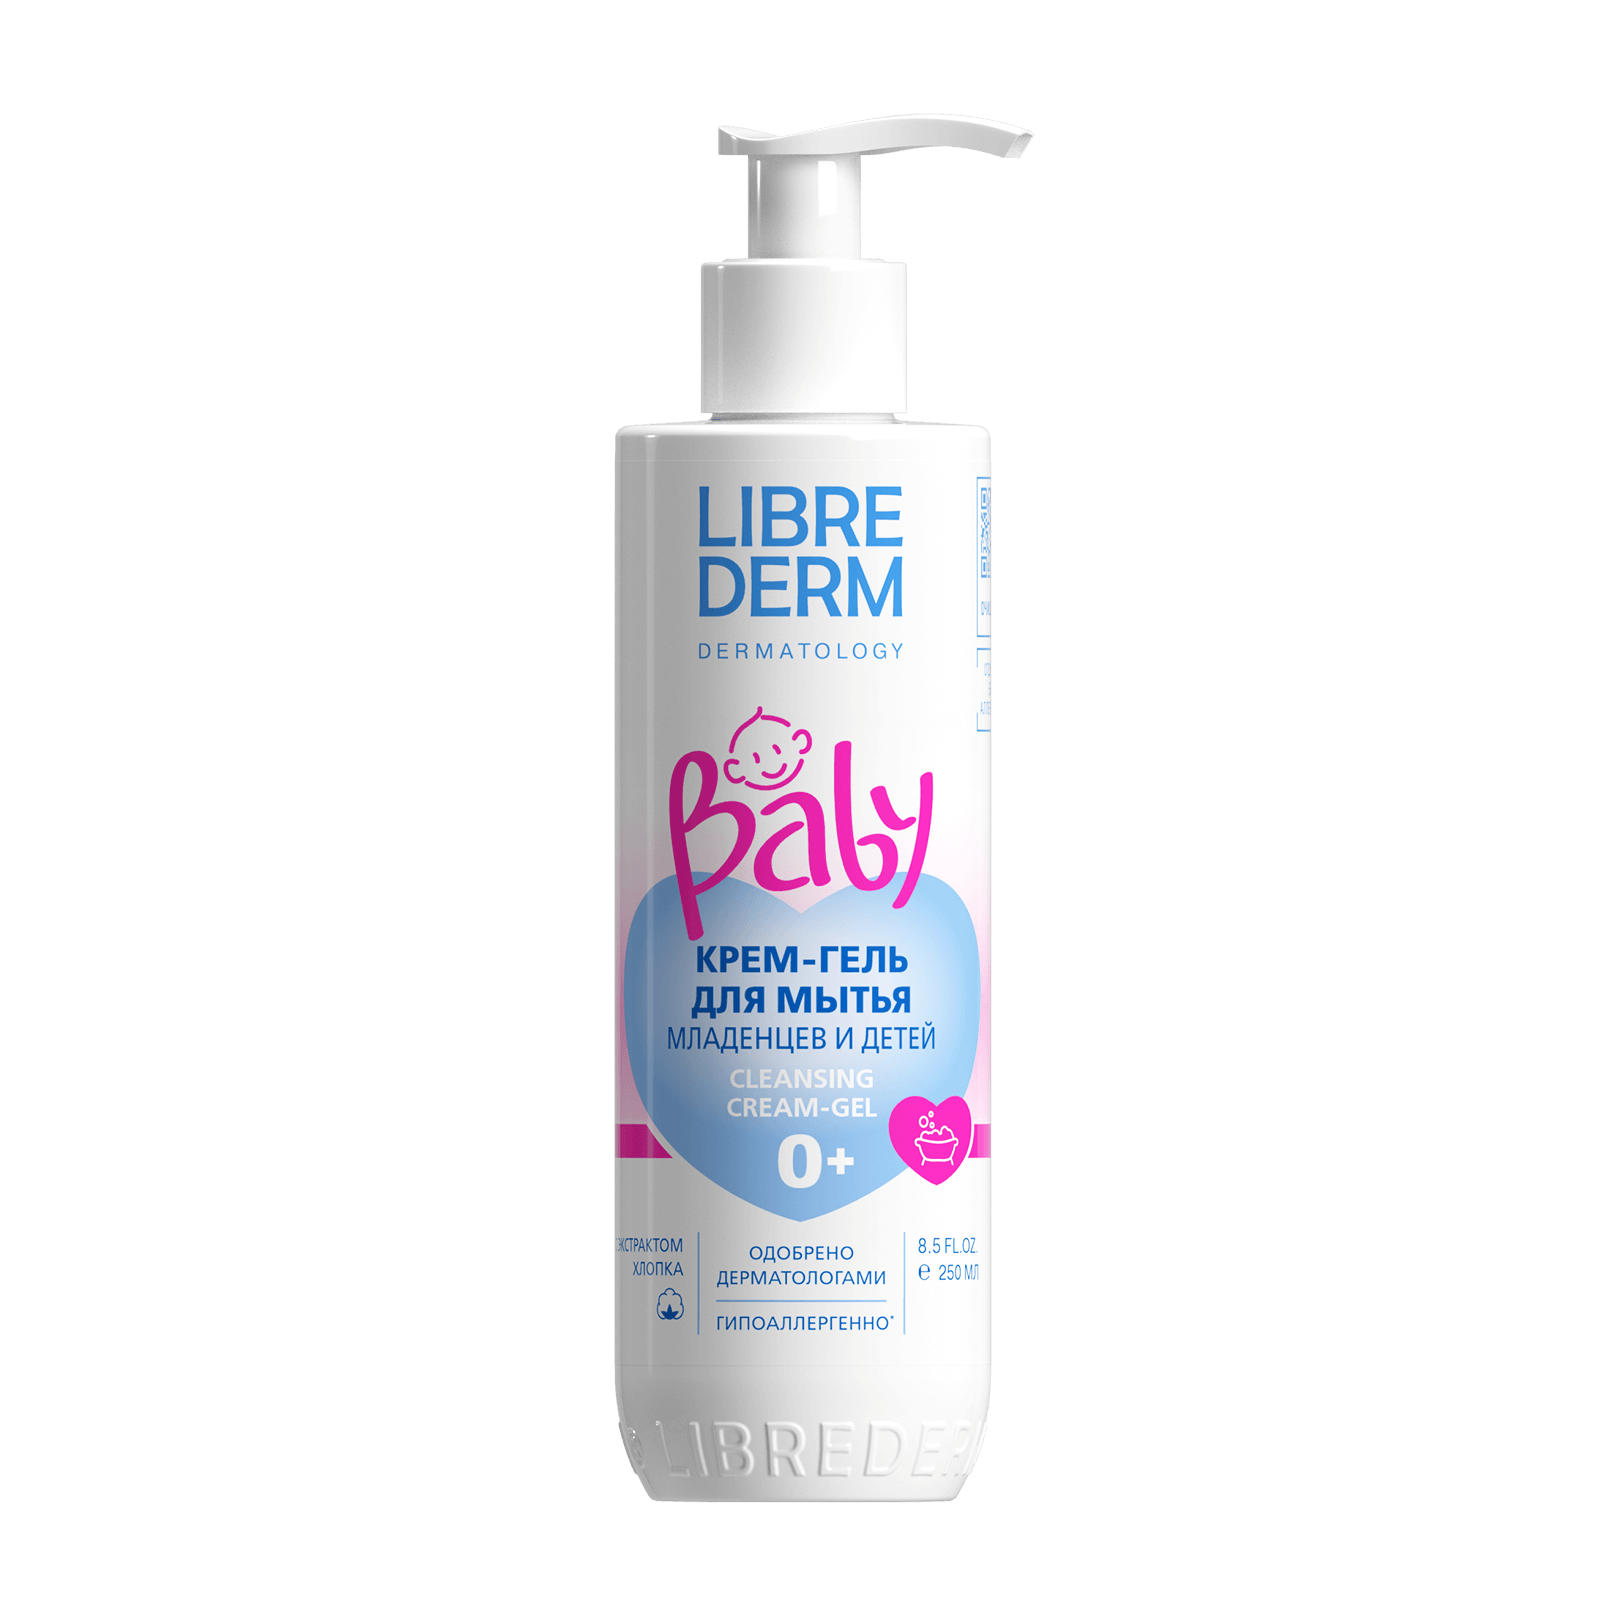 Librederm Baby, крем-гель для мытья новорожденных младенцев и детей 250 мл salt of the earth магниевая соль для купания детей 0 magnesium baby bath salt 500 г